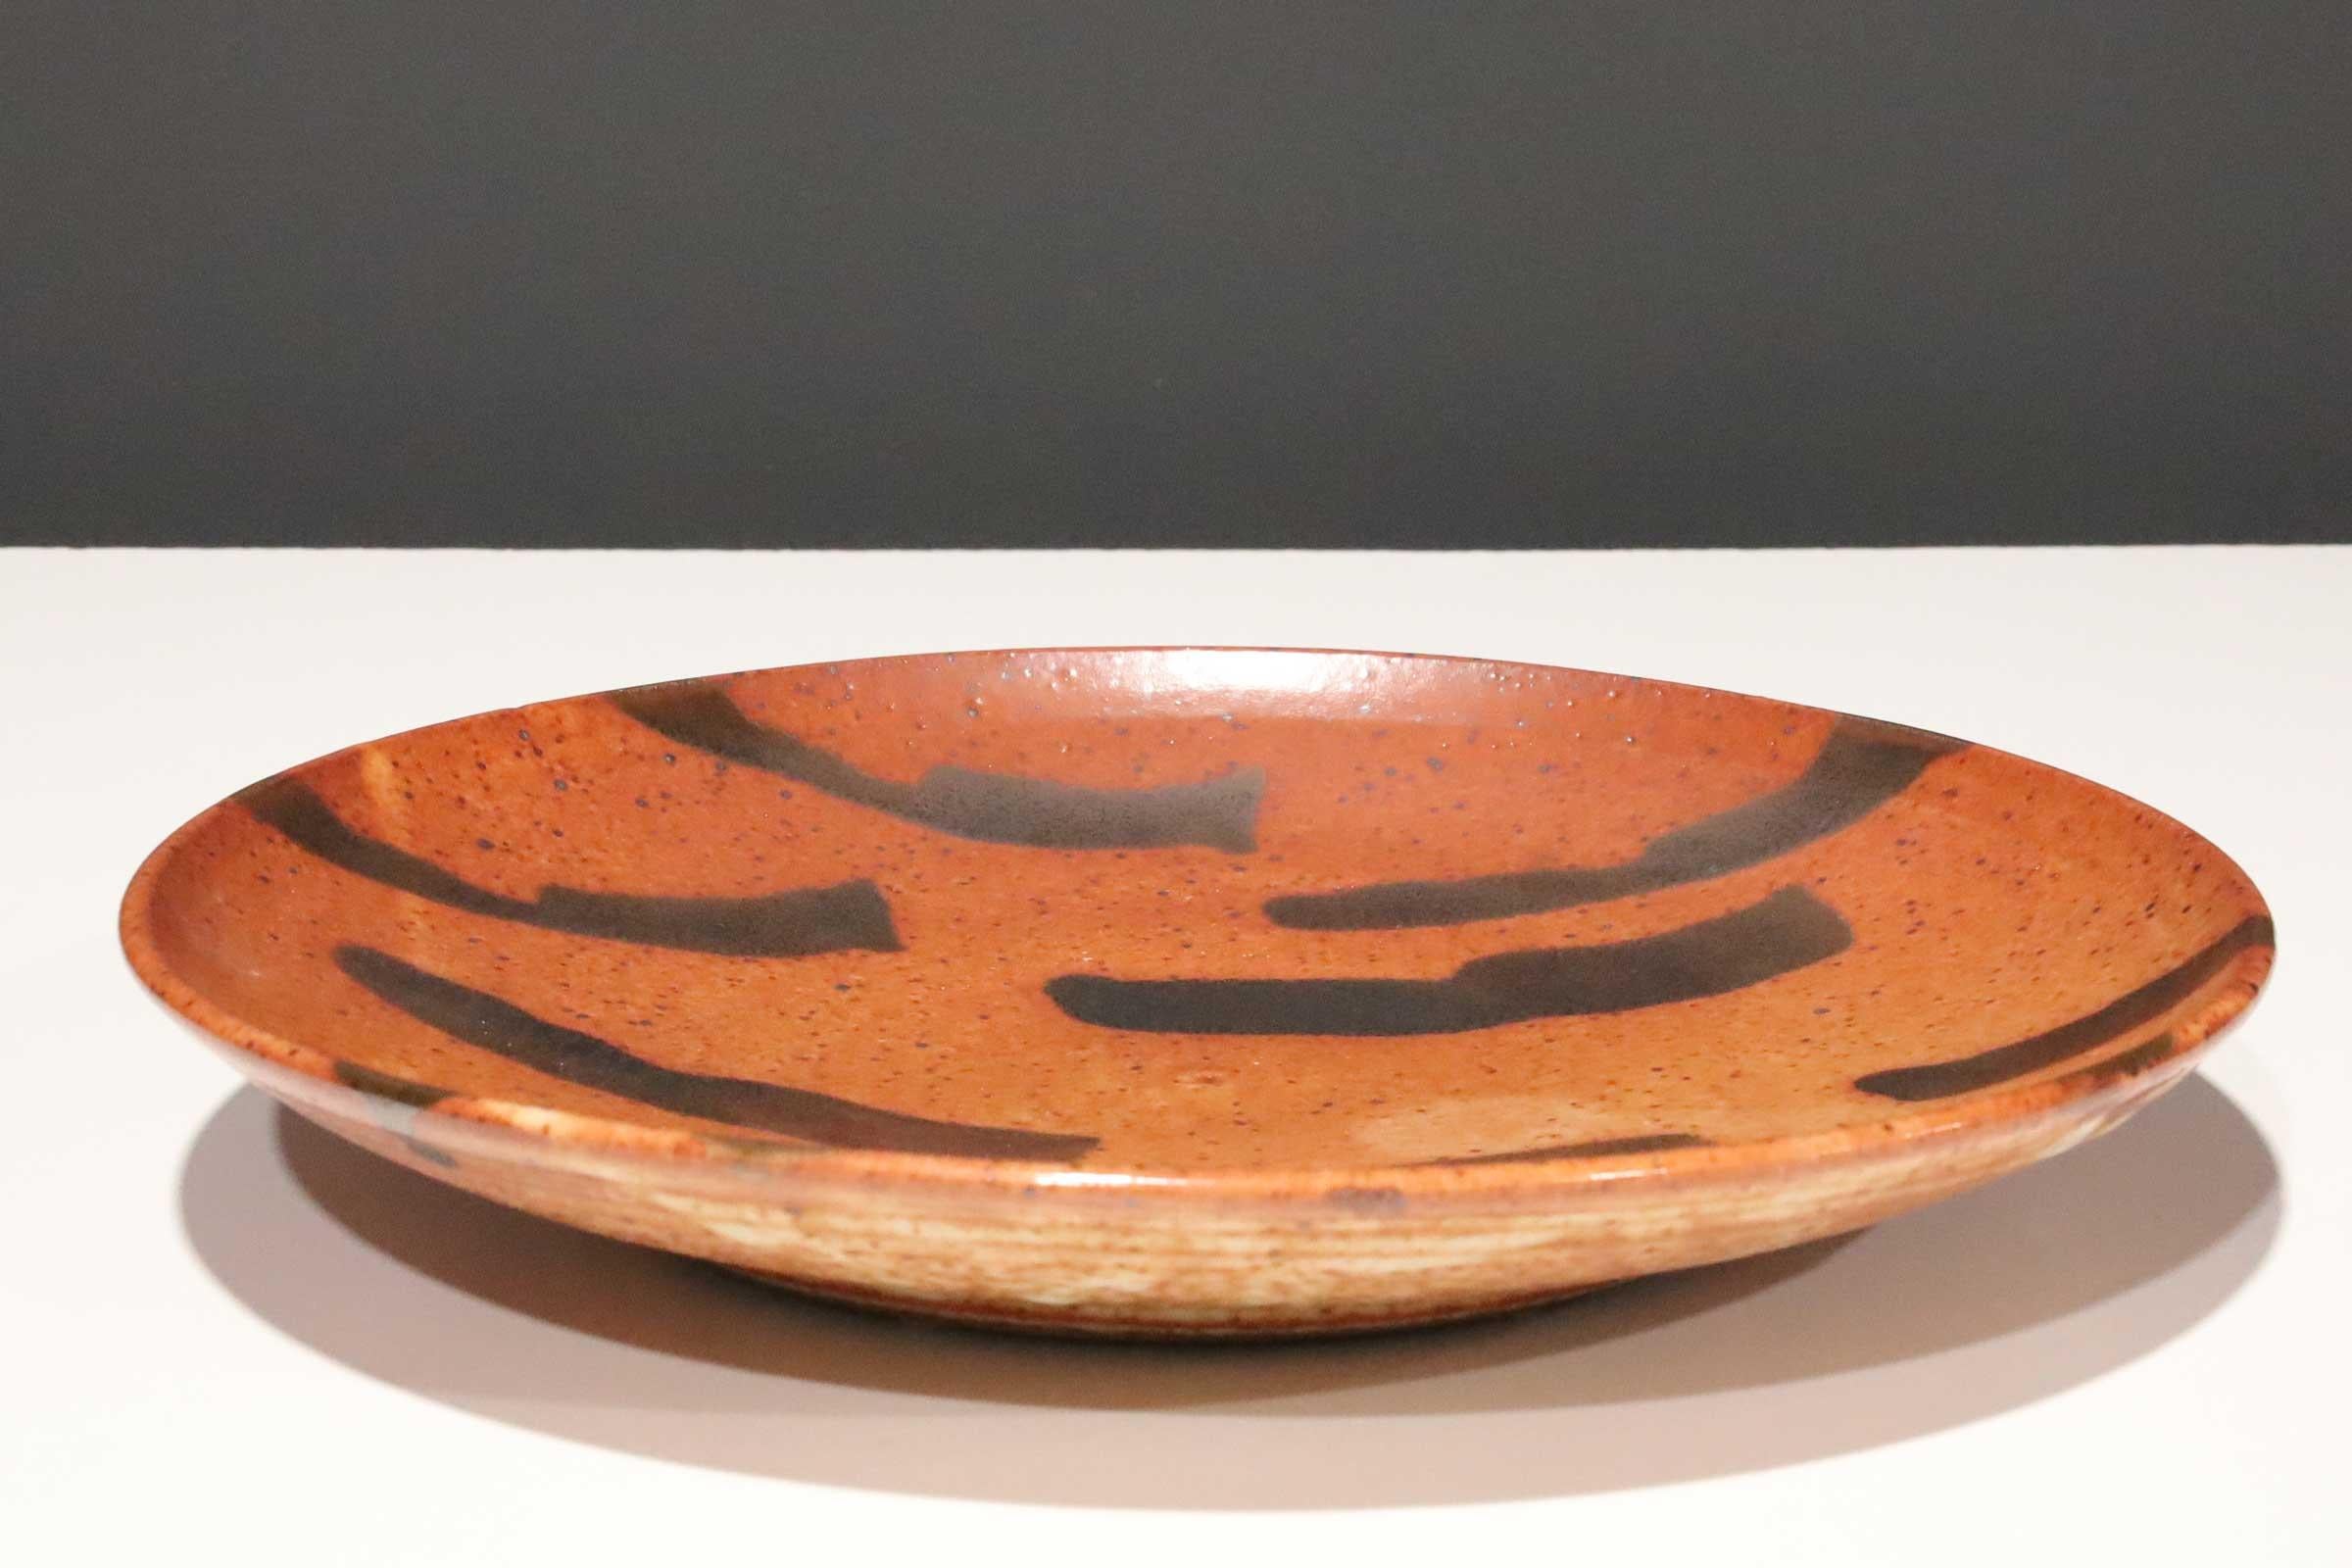 Grand plat en poterie d'atelier avec une glaçure rouge et des plats décoratifs bruns. 

Warren MacKenzie est connu pour sa poterie fonctionnelle simple et tournée, influencée par Bernard Leach et l'esthétique japonaise de l'œuvre de Shoji